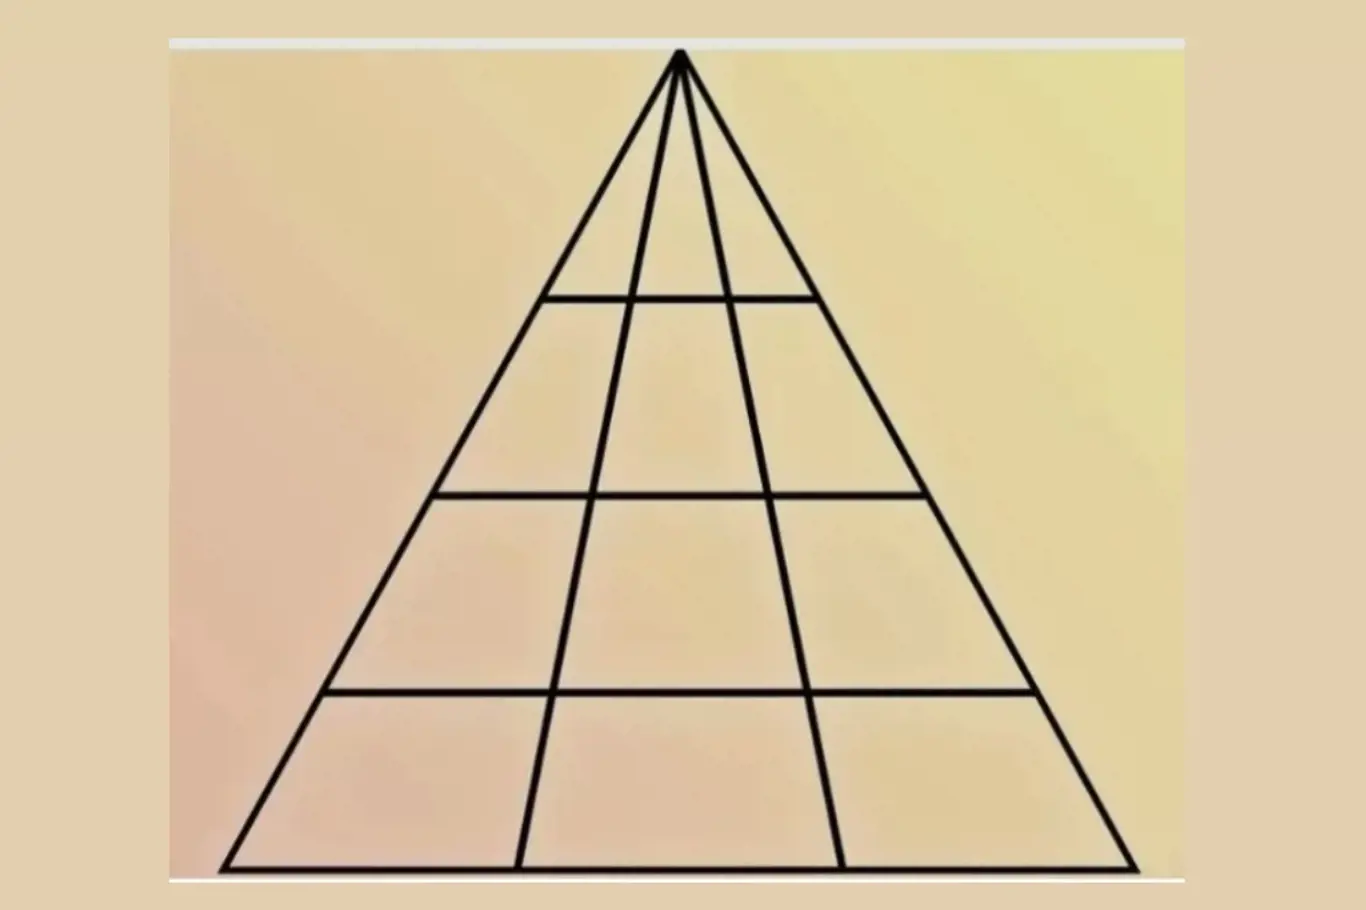 IQ výzva pro bystré mozky: Spočítej všechny trojúhelníky